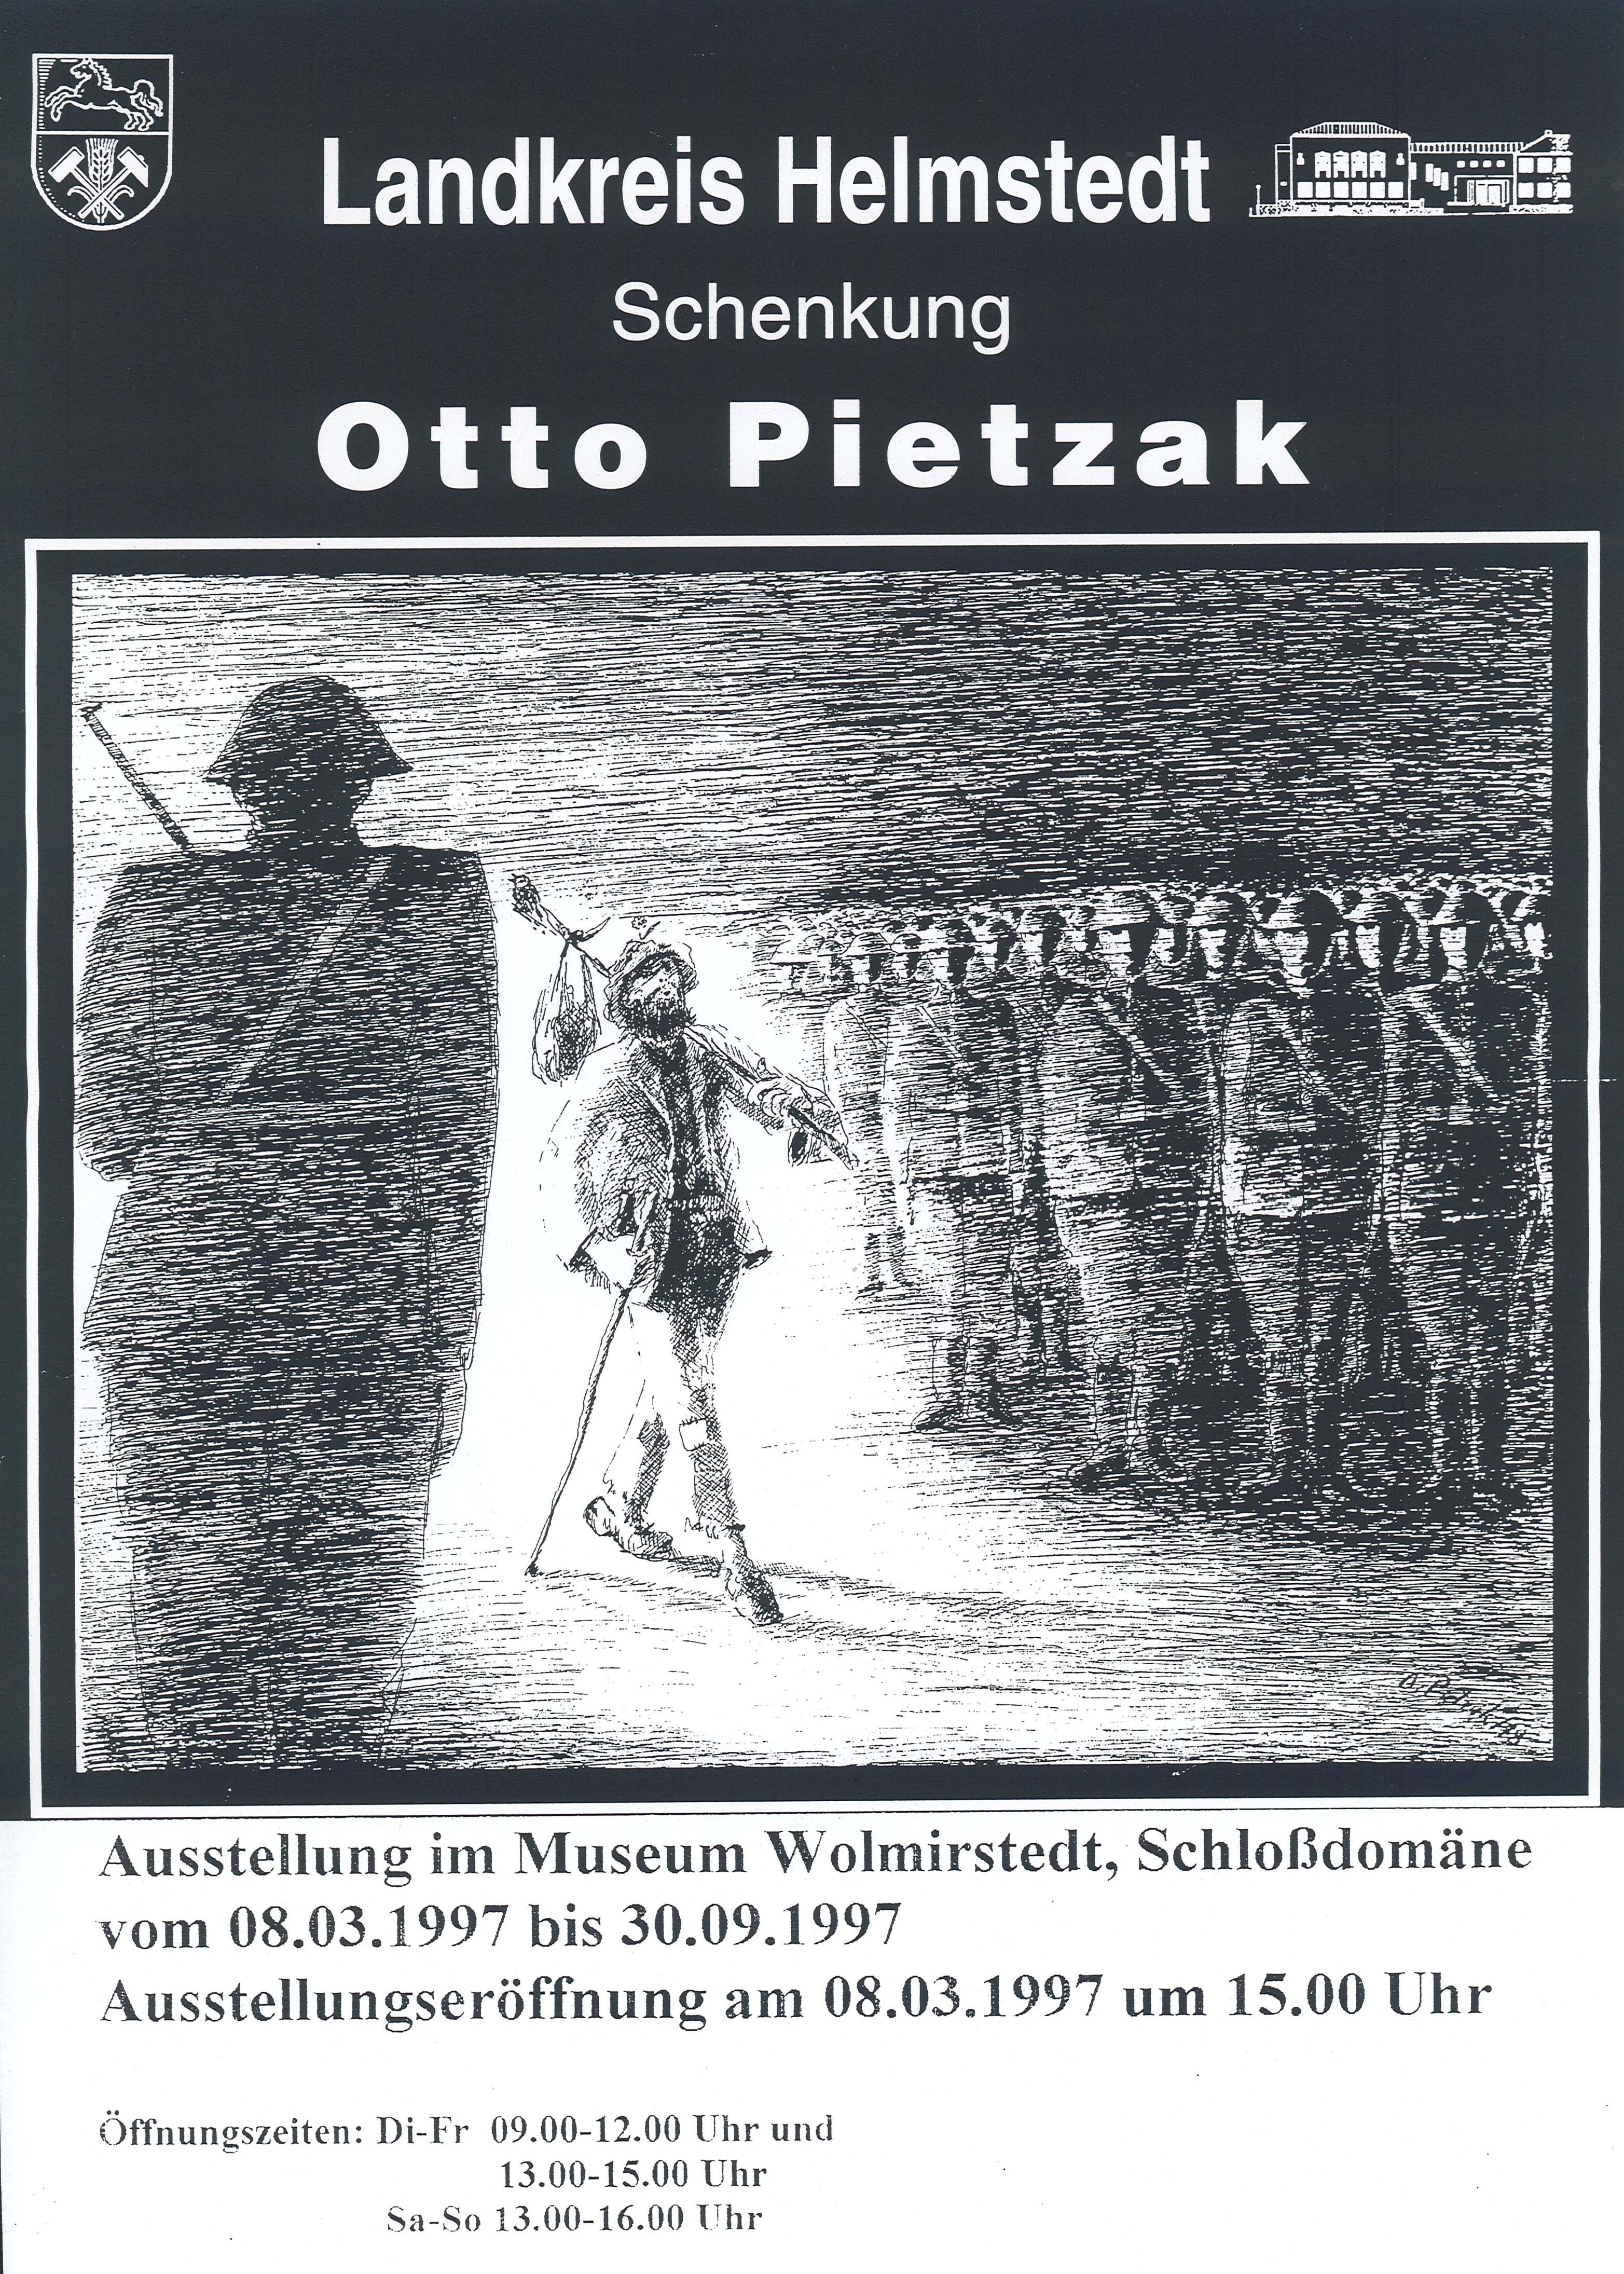 Ausstellungsplakat Sonderausstellung "Otto Pietzak" (Museum Wolmirstedt RR-F)